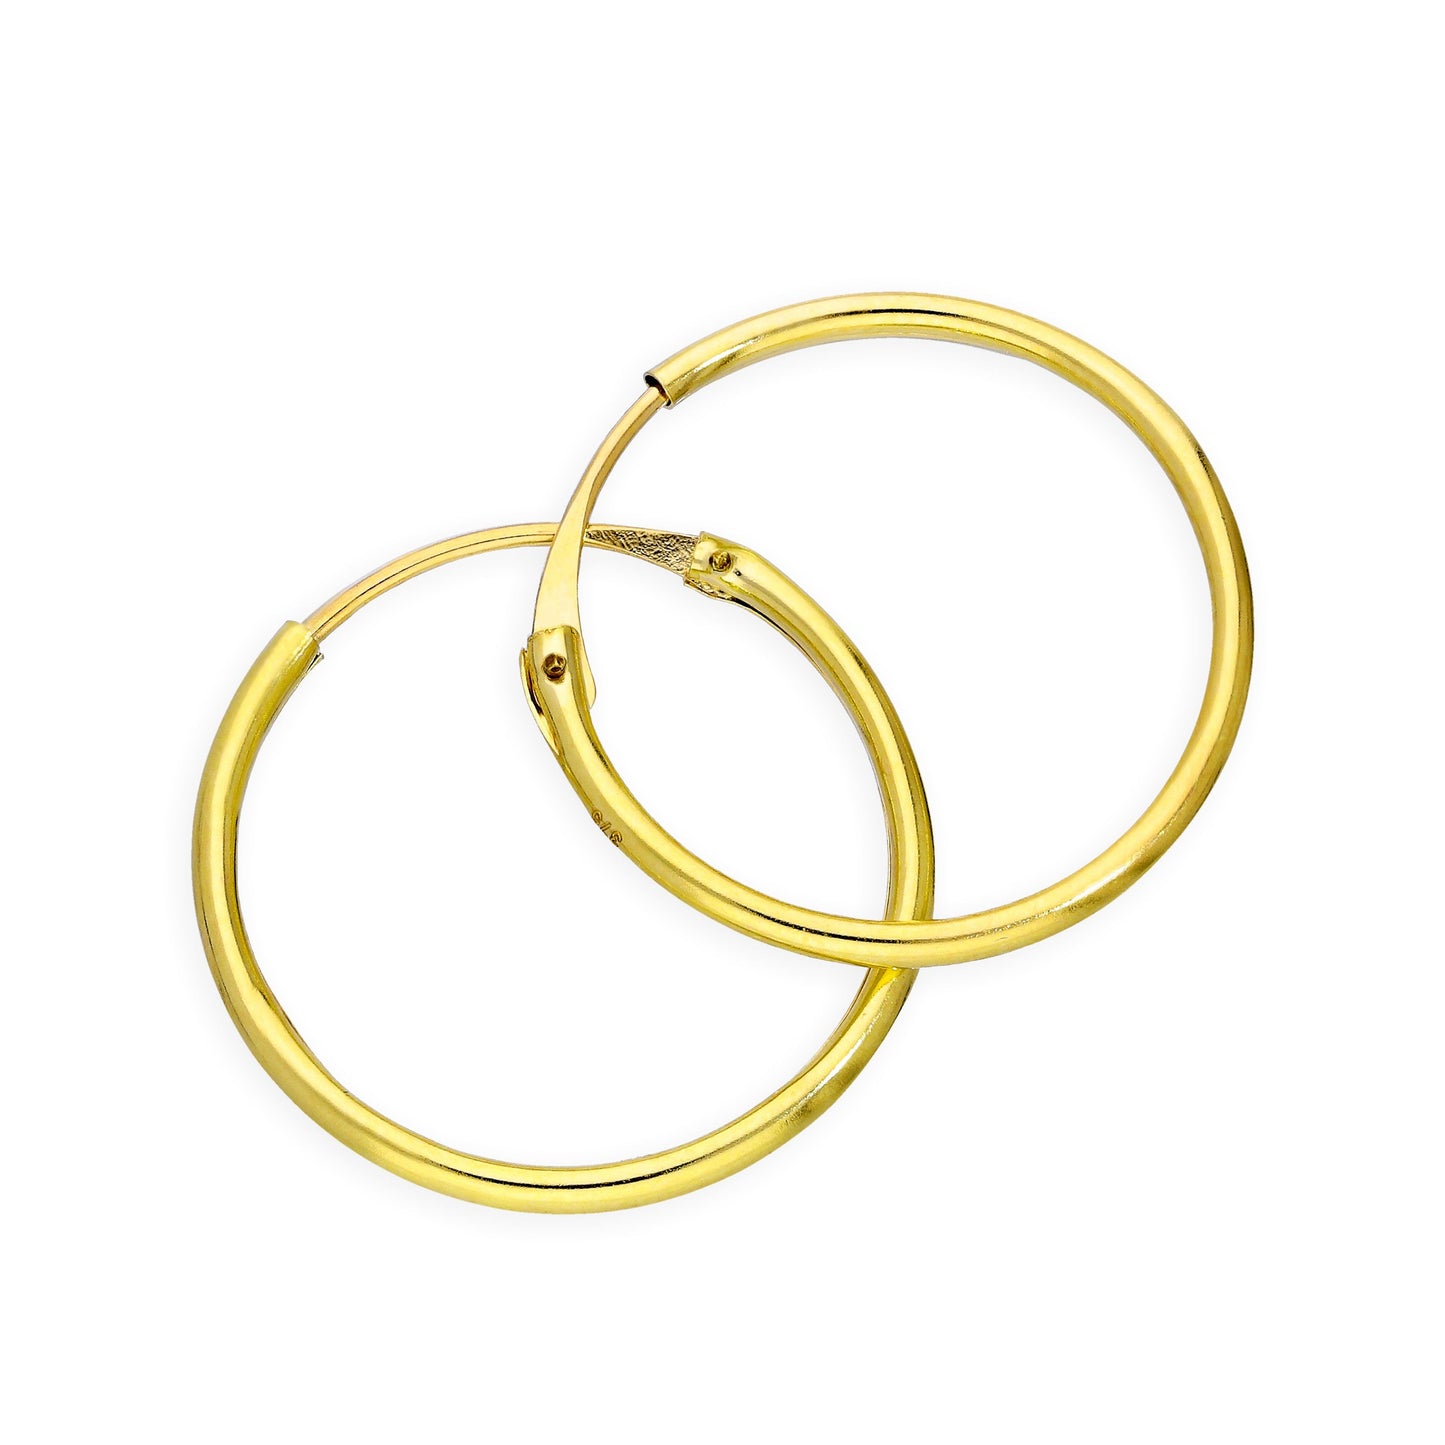 9ct Gold 1.2mm Tube Hoop Earrings 8mm - 20mm